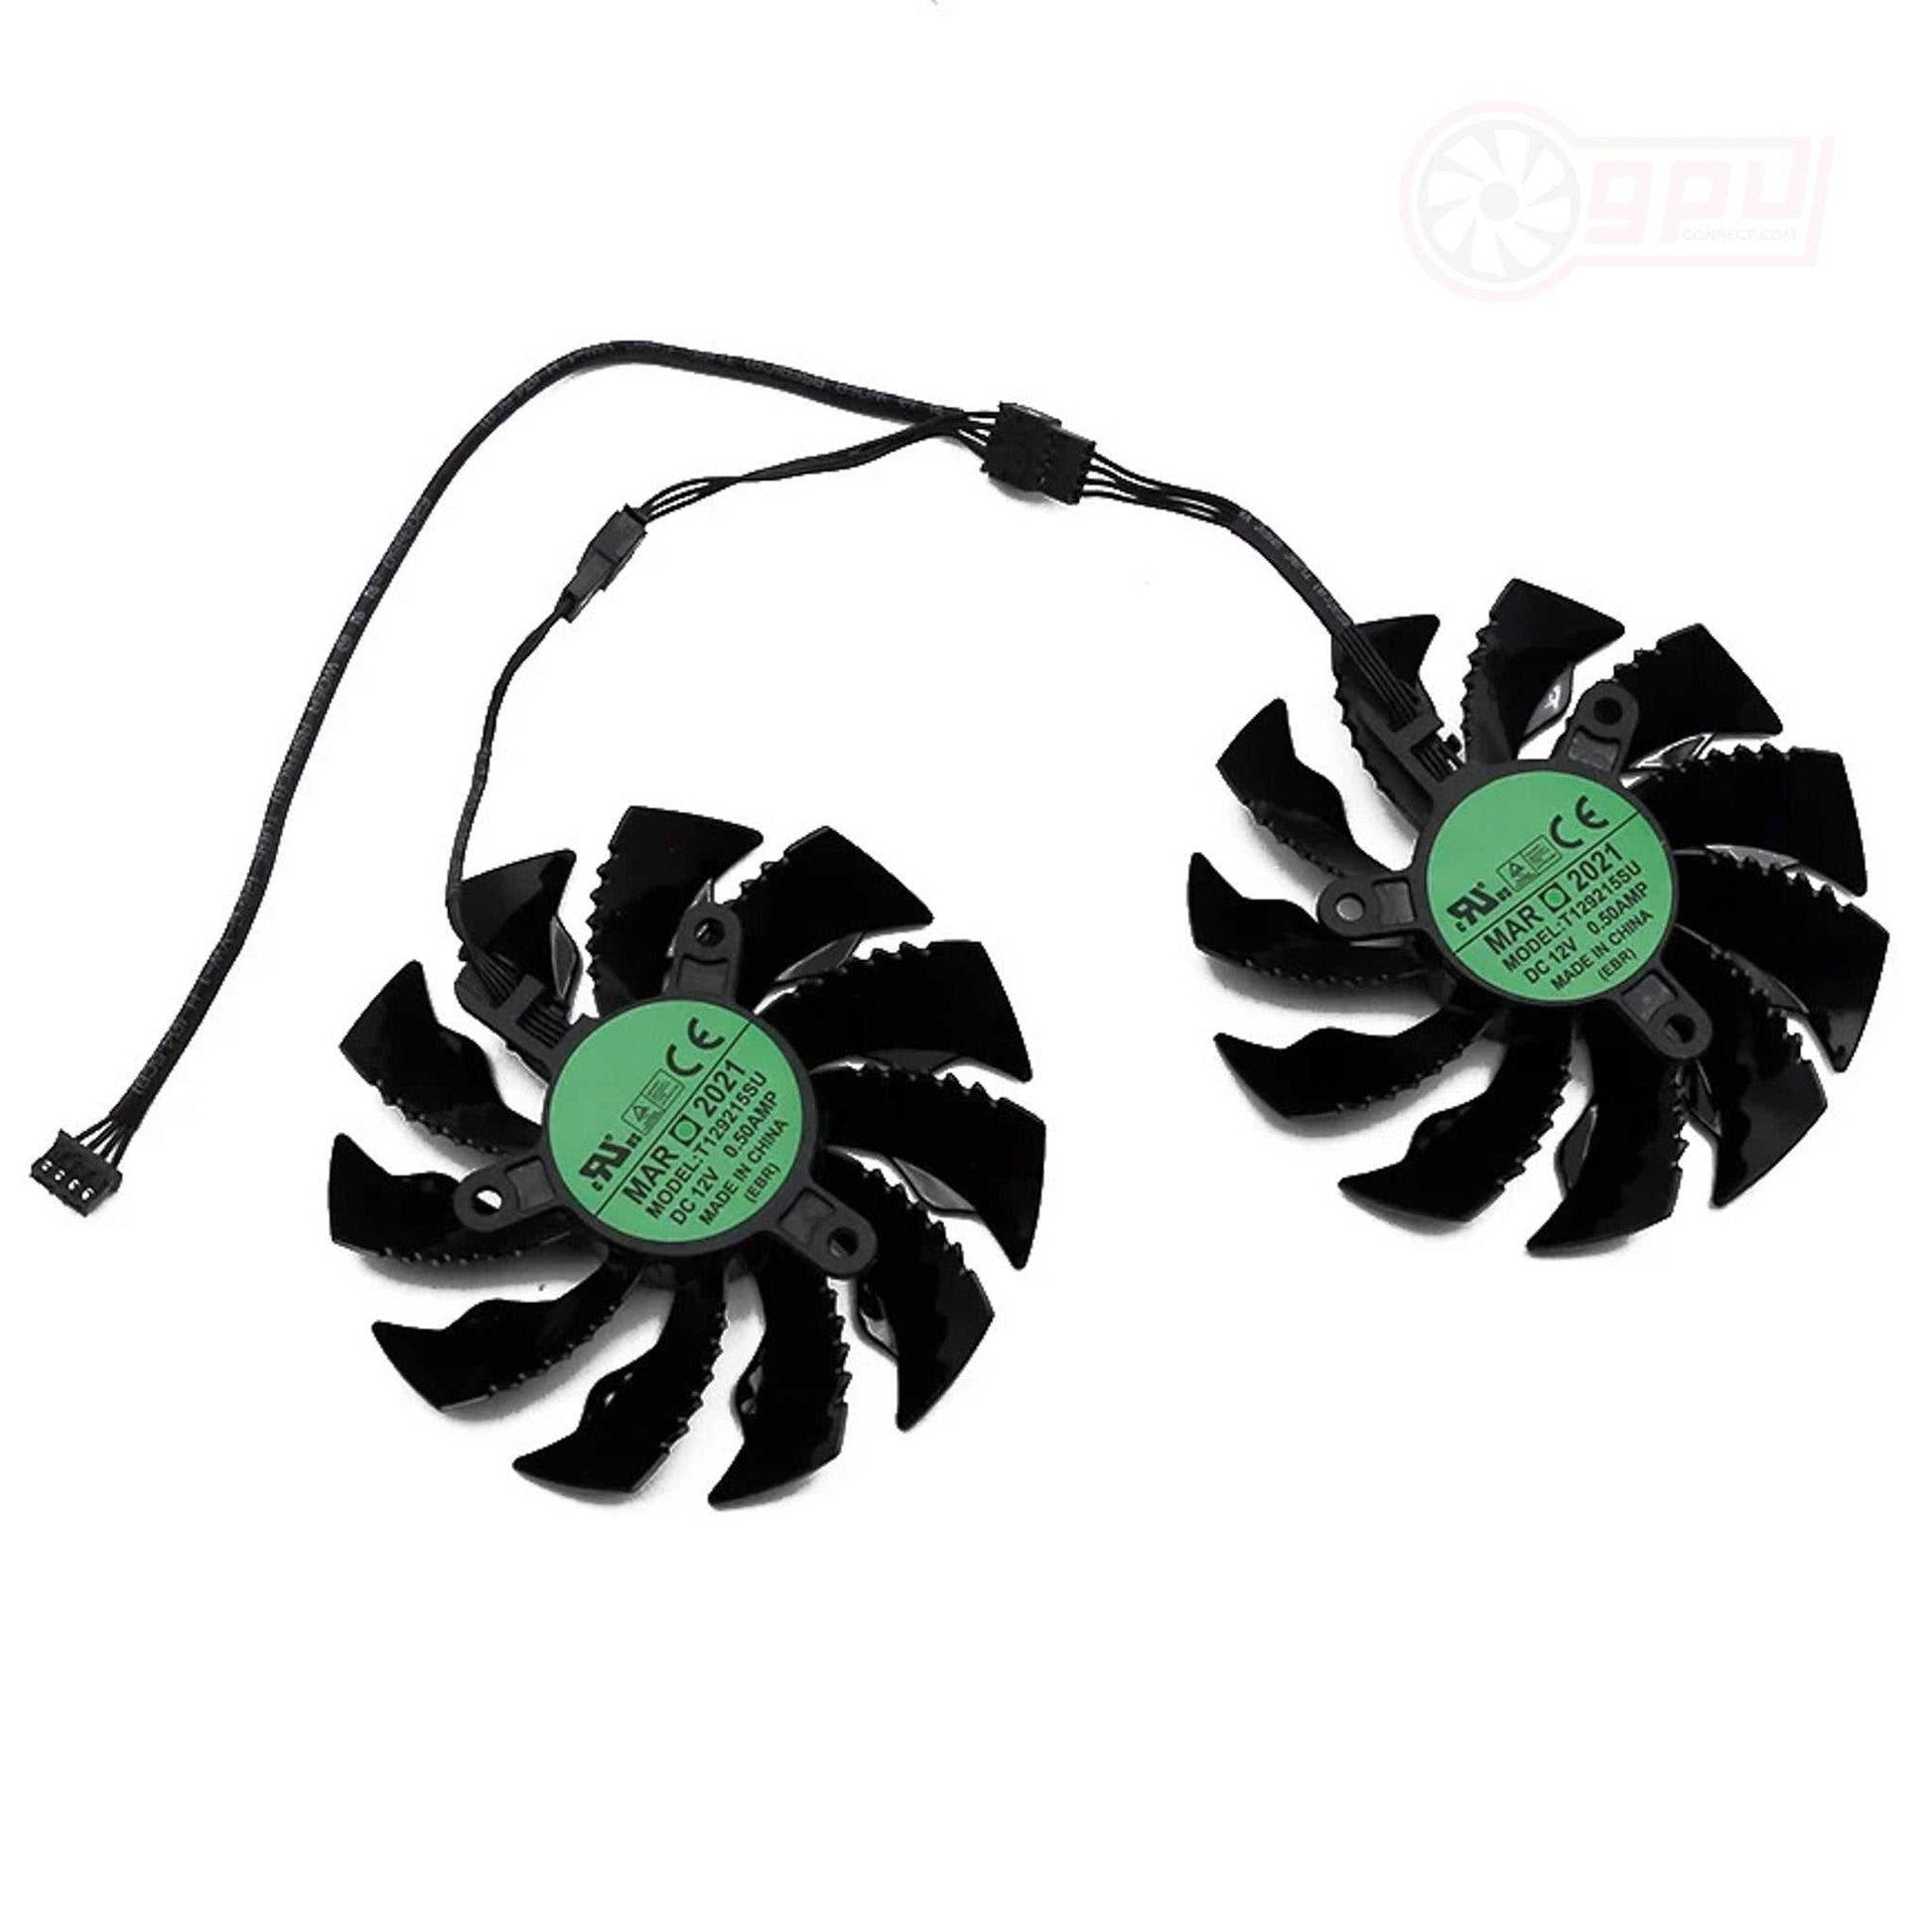 Gigabyte GTX 960 950 / R9 390 380 GPU Fan Set - GPUCONNECT.COM